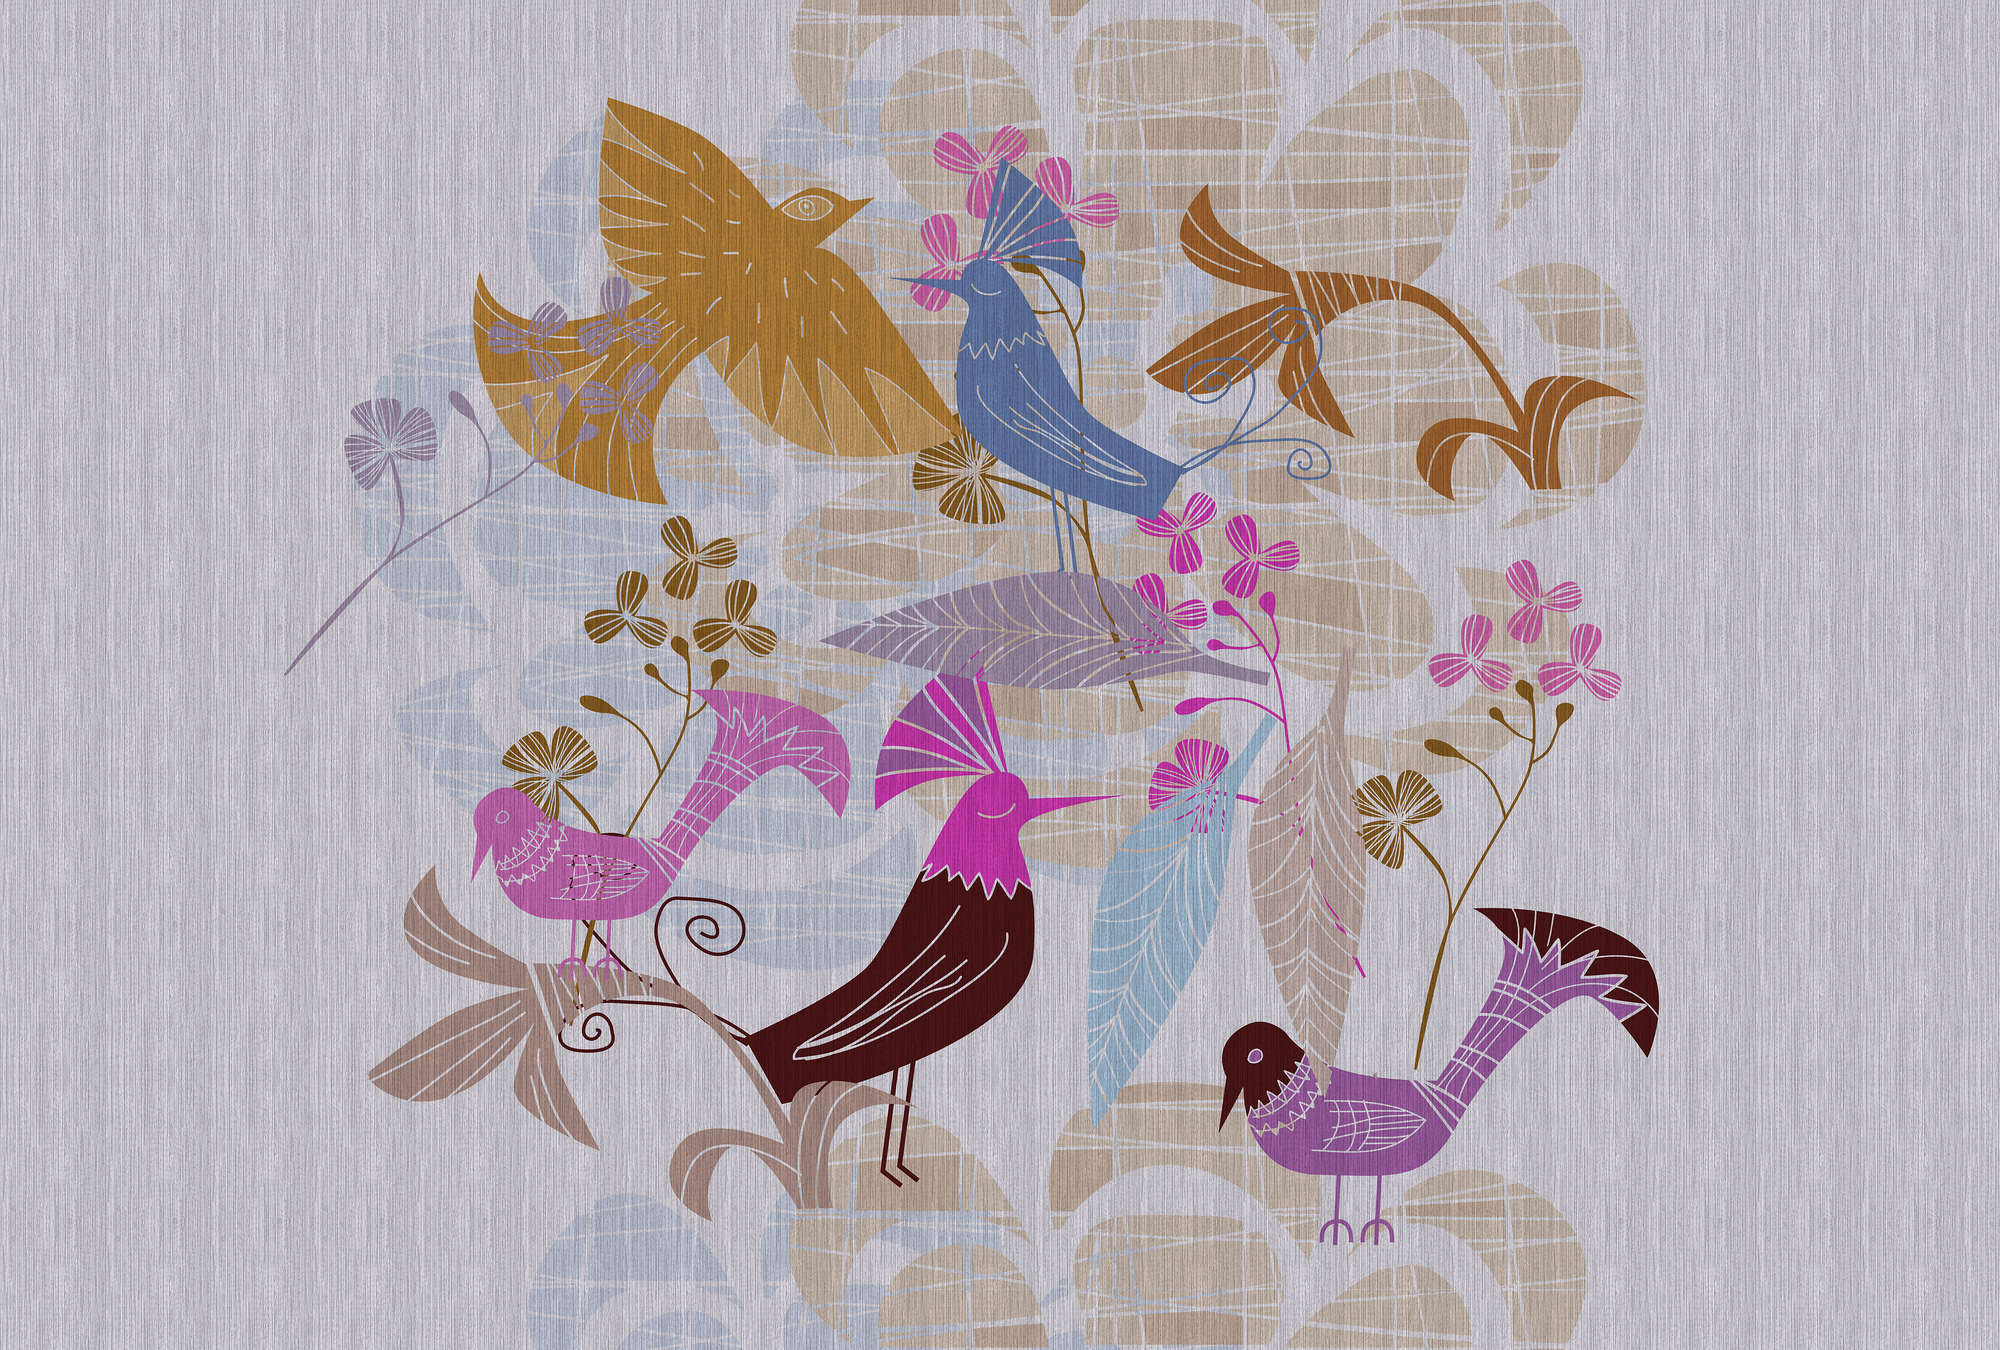             Birdland 1 - Mural de pájaros de estilo retro escandinavo
        